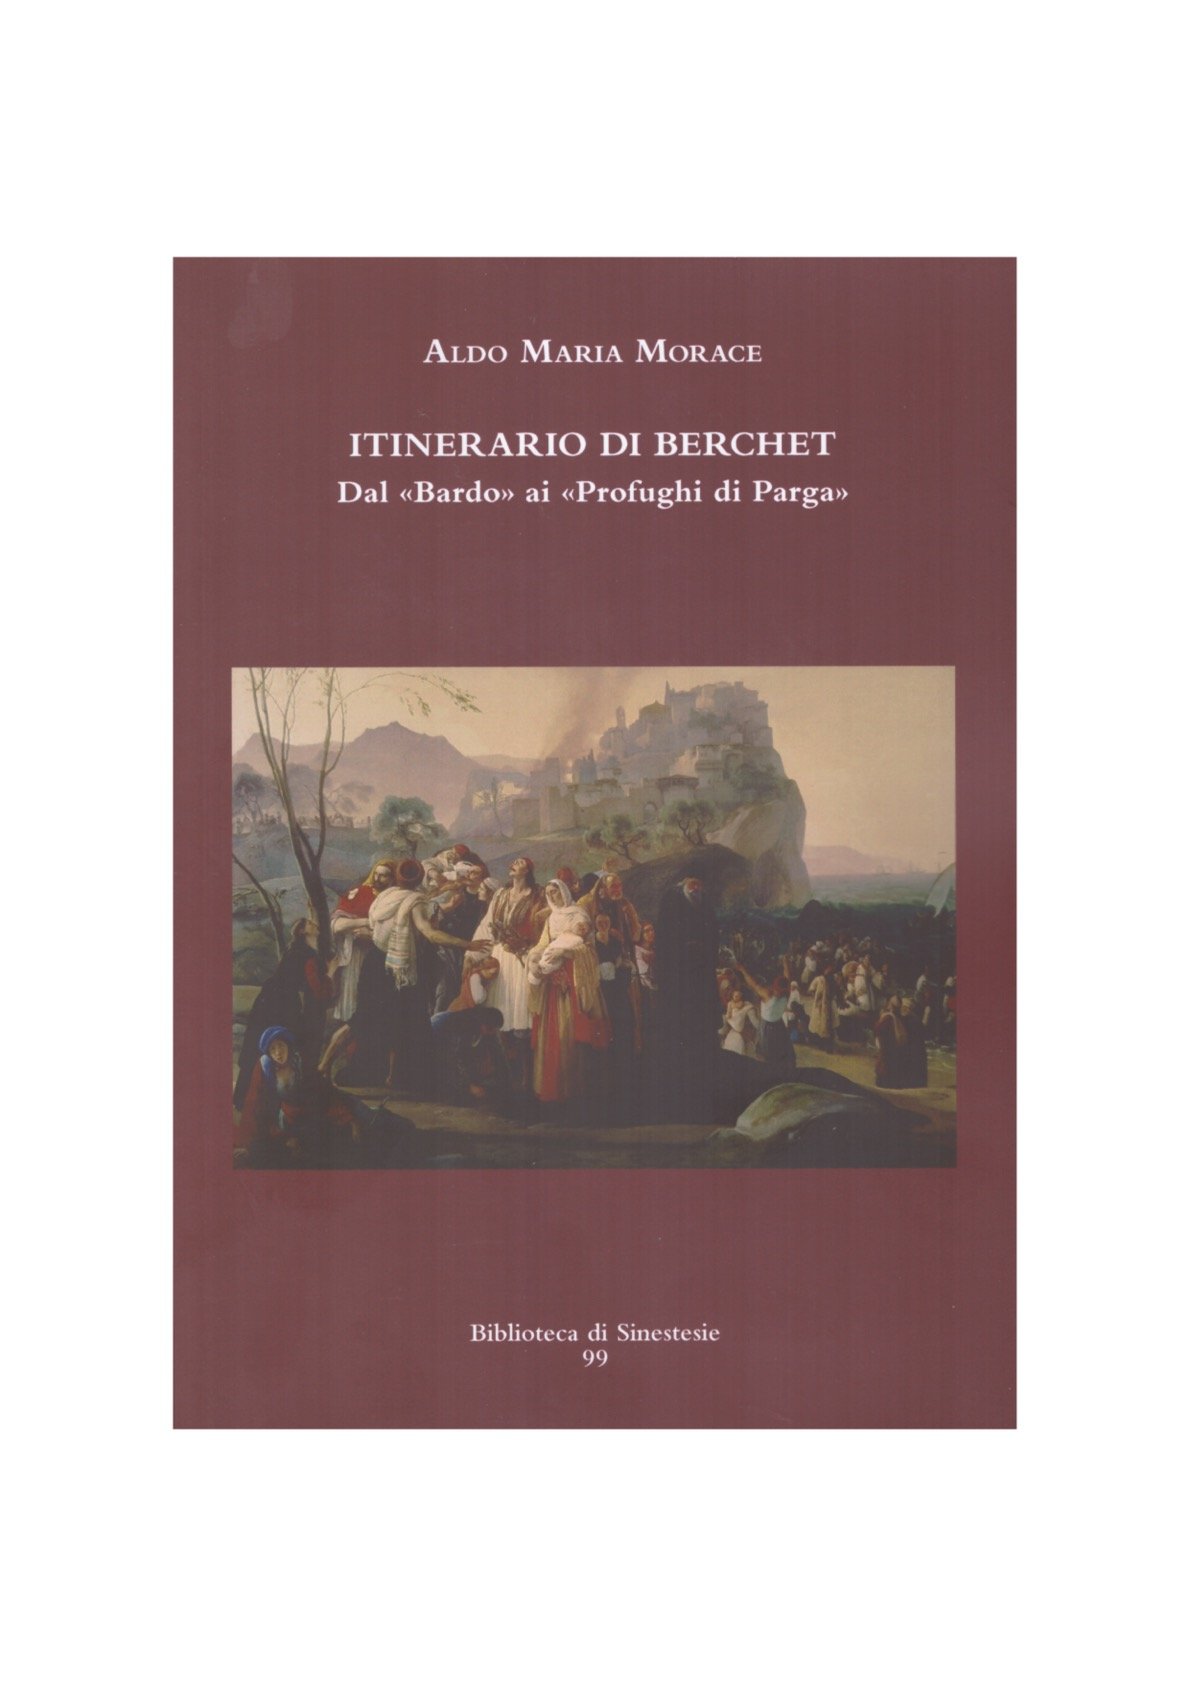 A.M. Morace, Itinerario di Berchet